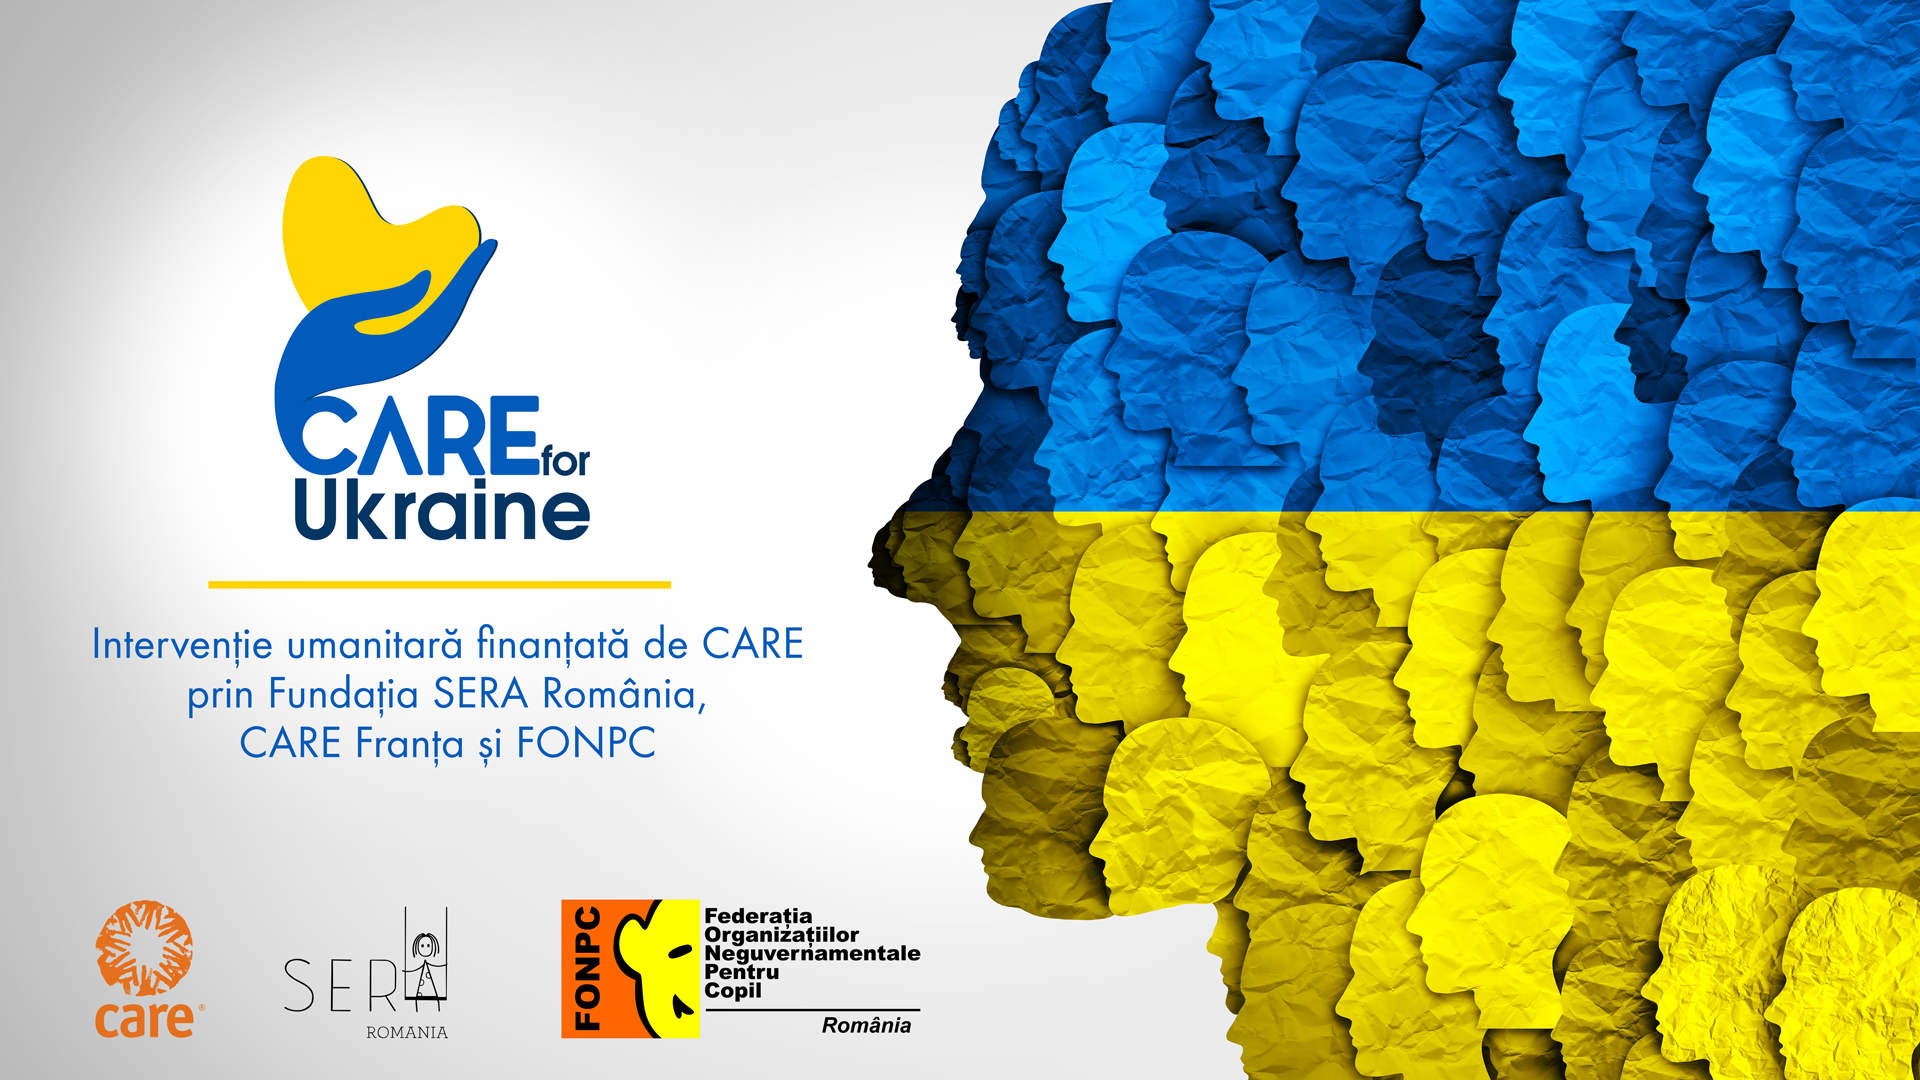 CARE FOR UKRAINE